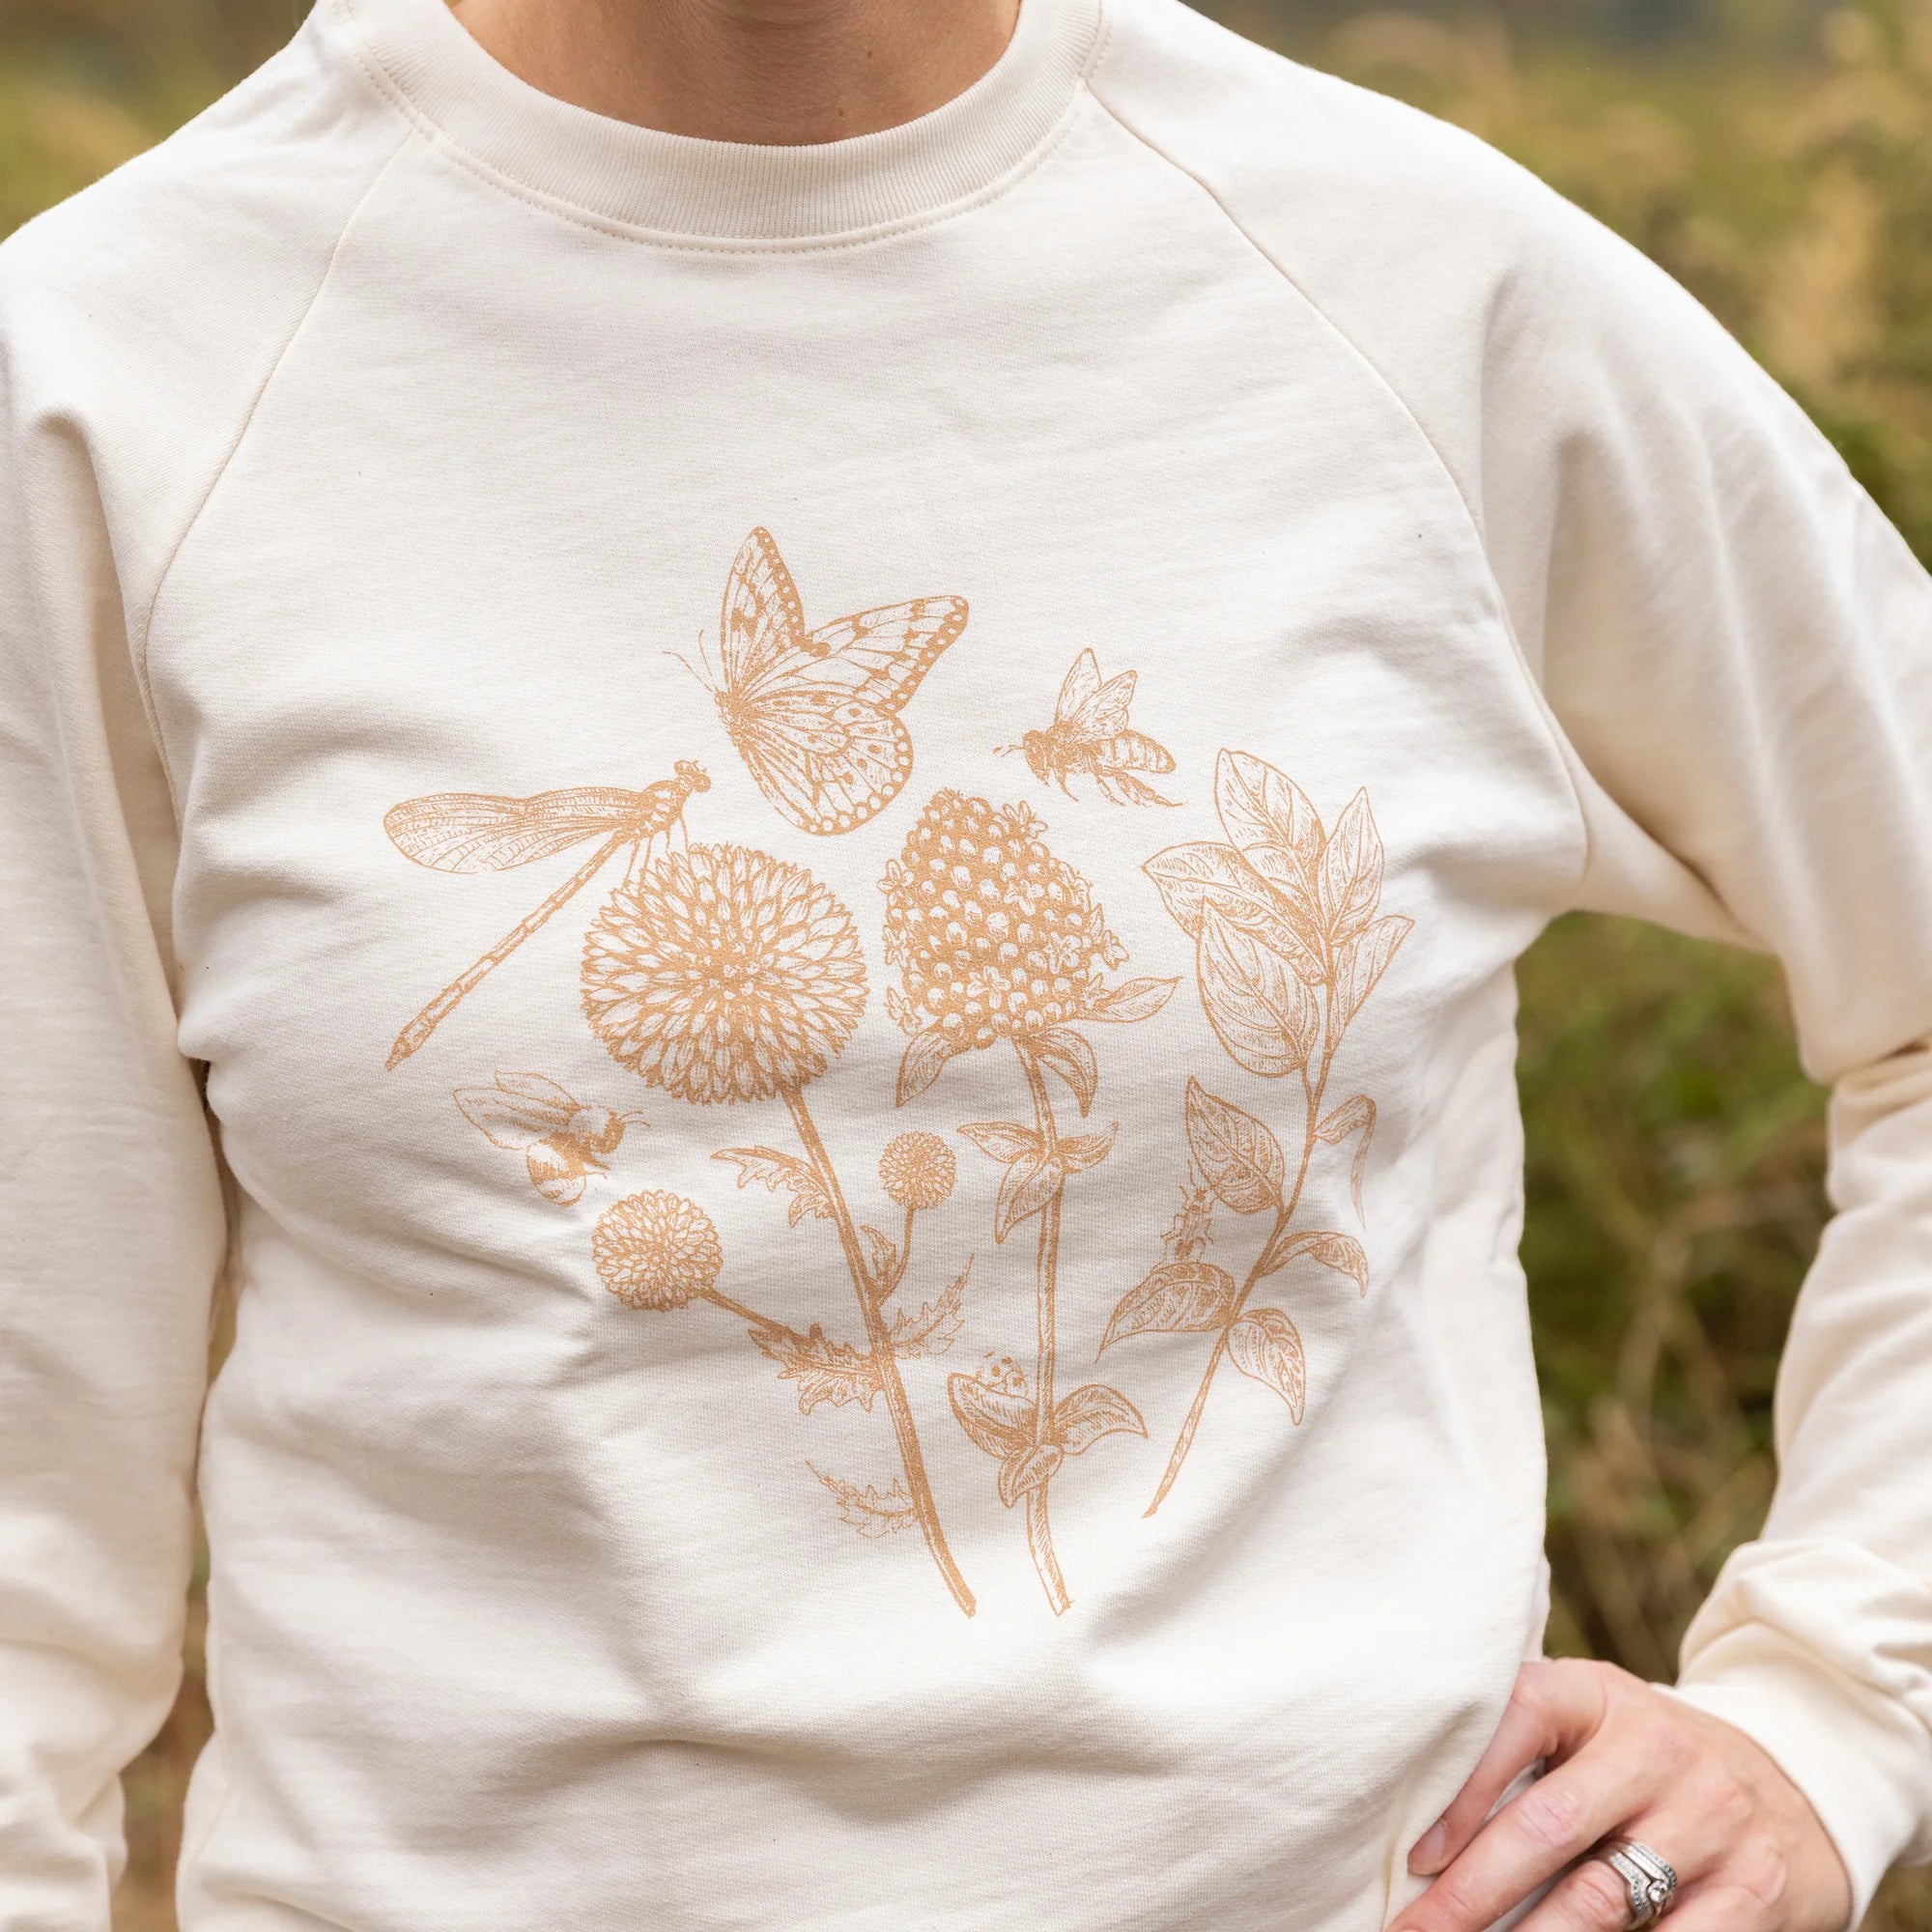 Pollinator Sweatshirt in Natural color